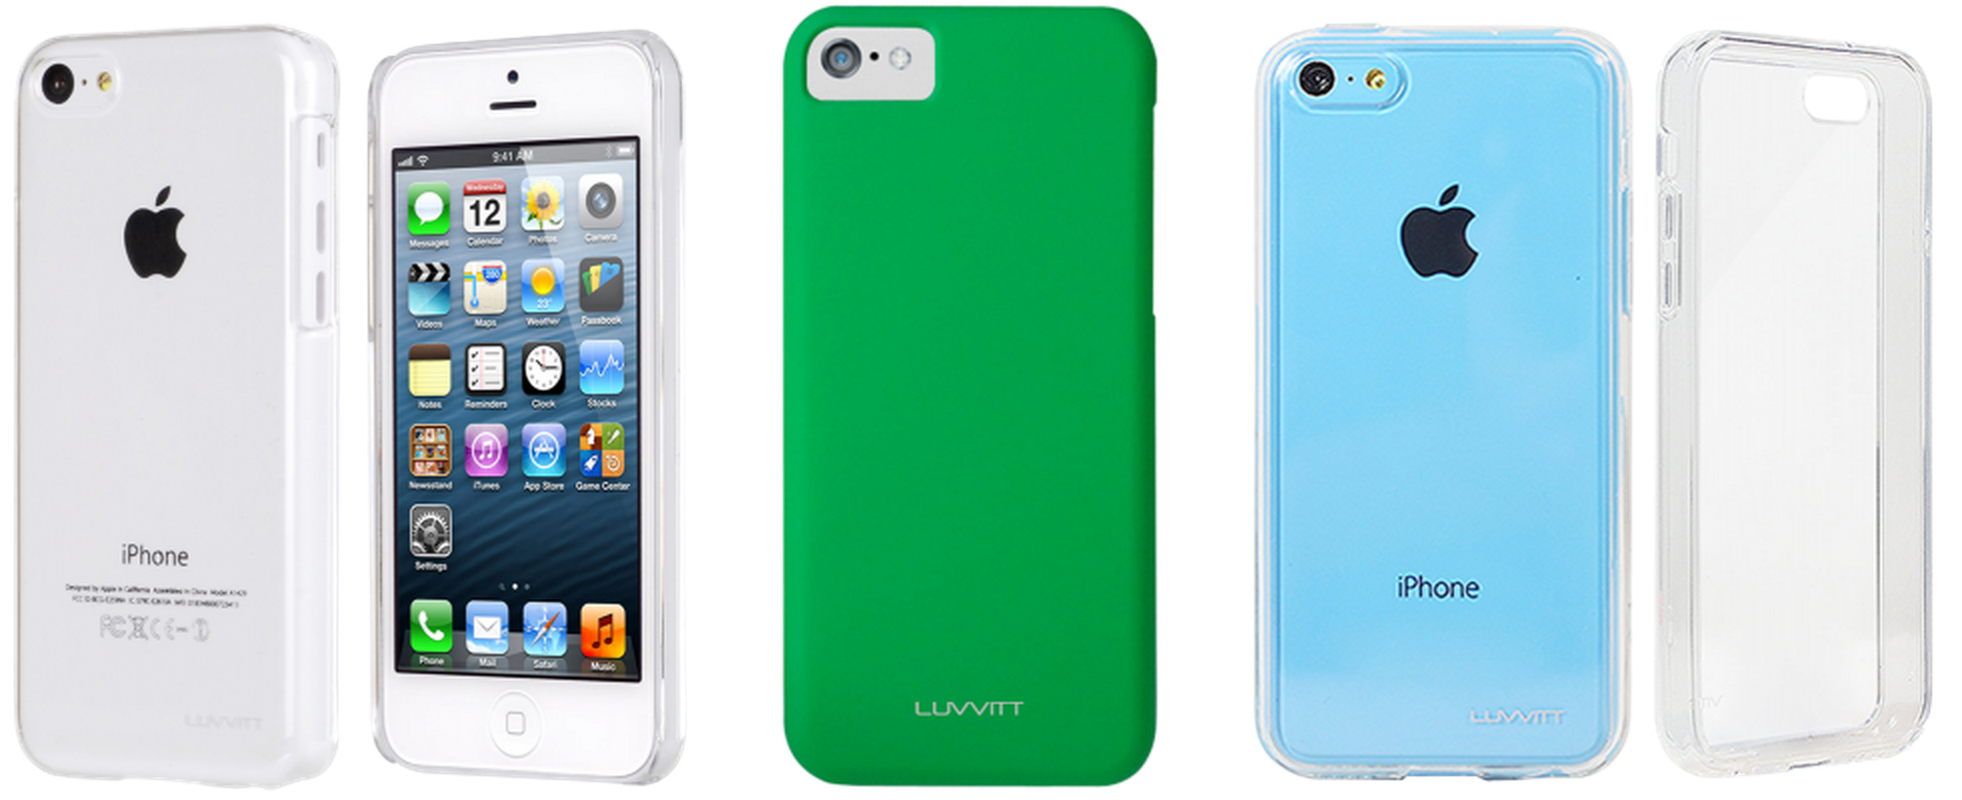 Luvvitt-iPhone-5c-cases